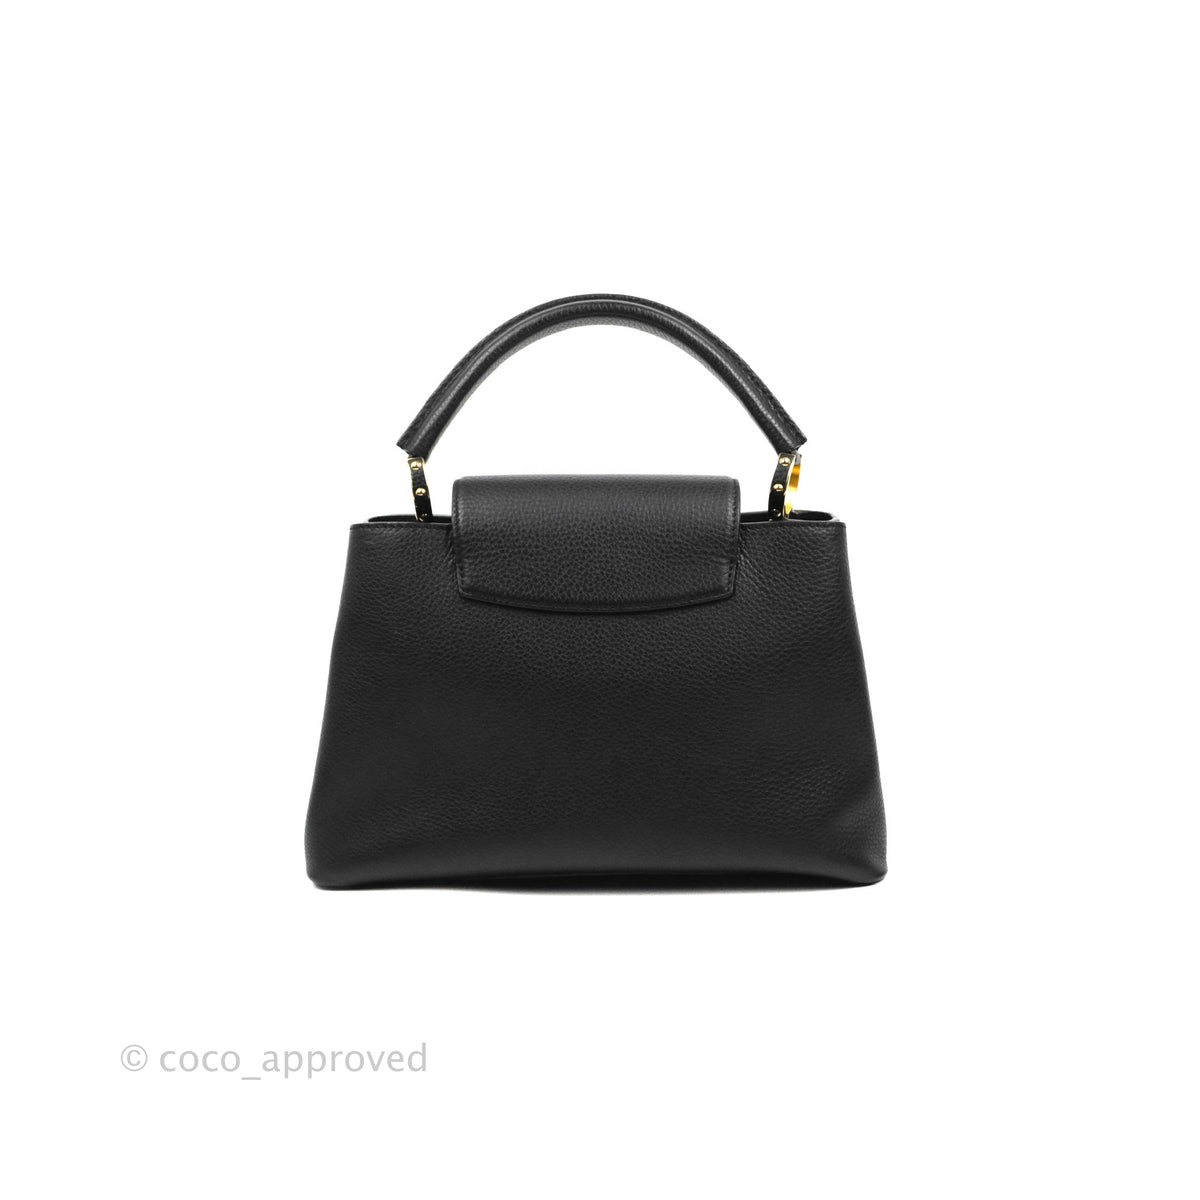 Louis Vuitton Capucines Taurillon Leather Satchel Bag